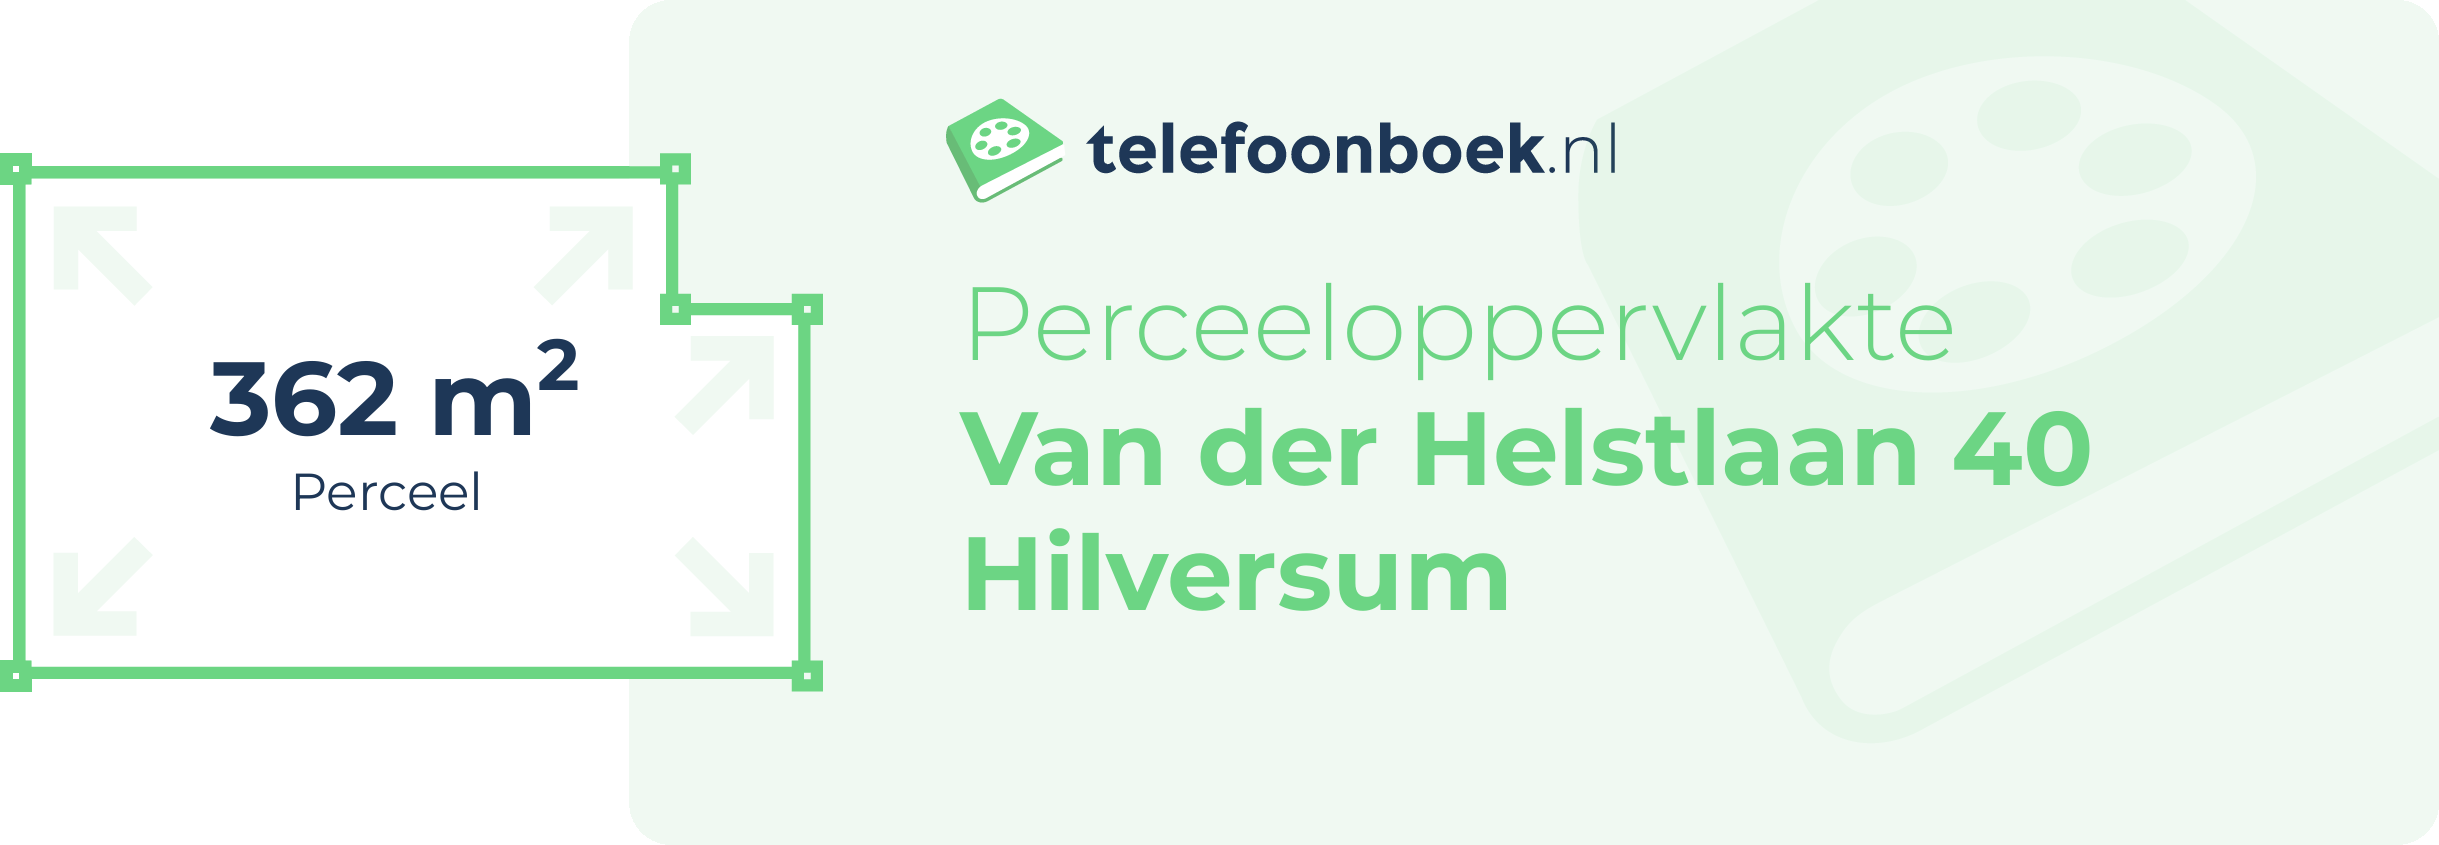 Perceeloppervlakte Van Der Helstlaan 40 Hilversum